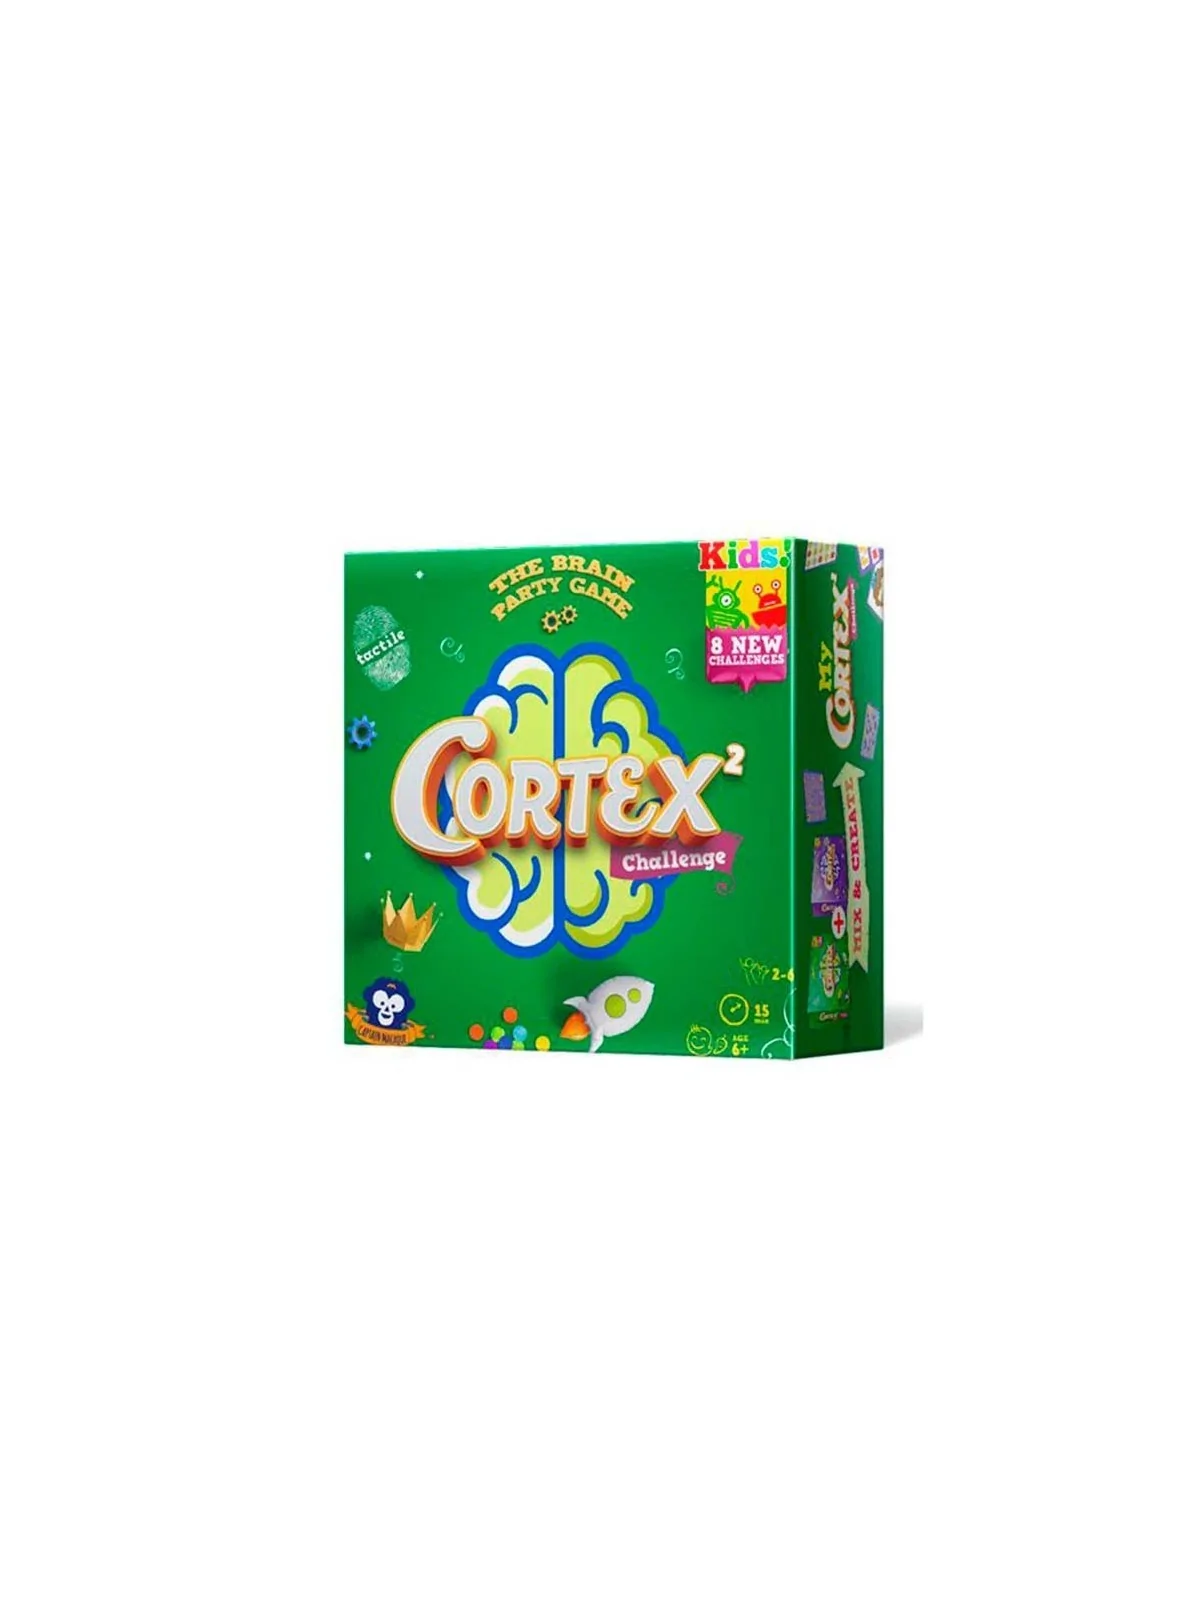 Comprar Cortex 2 Kids barato al mejor precio 14,39 € de Zygomatic